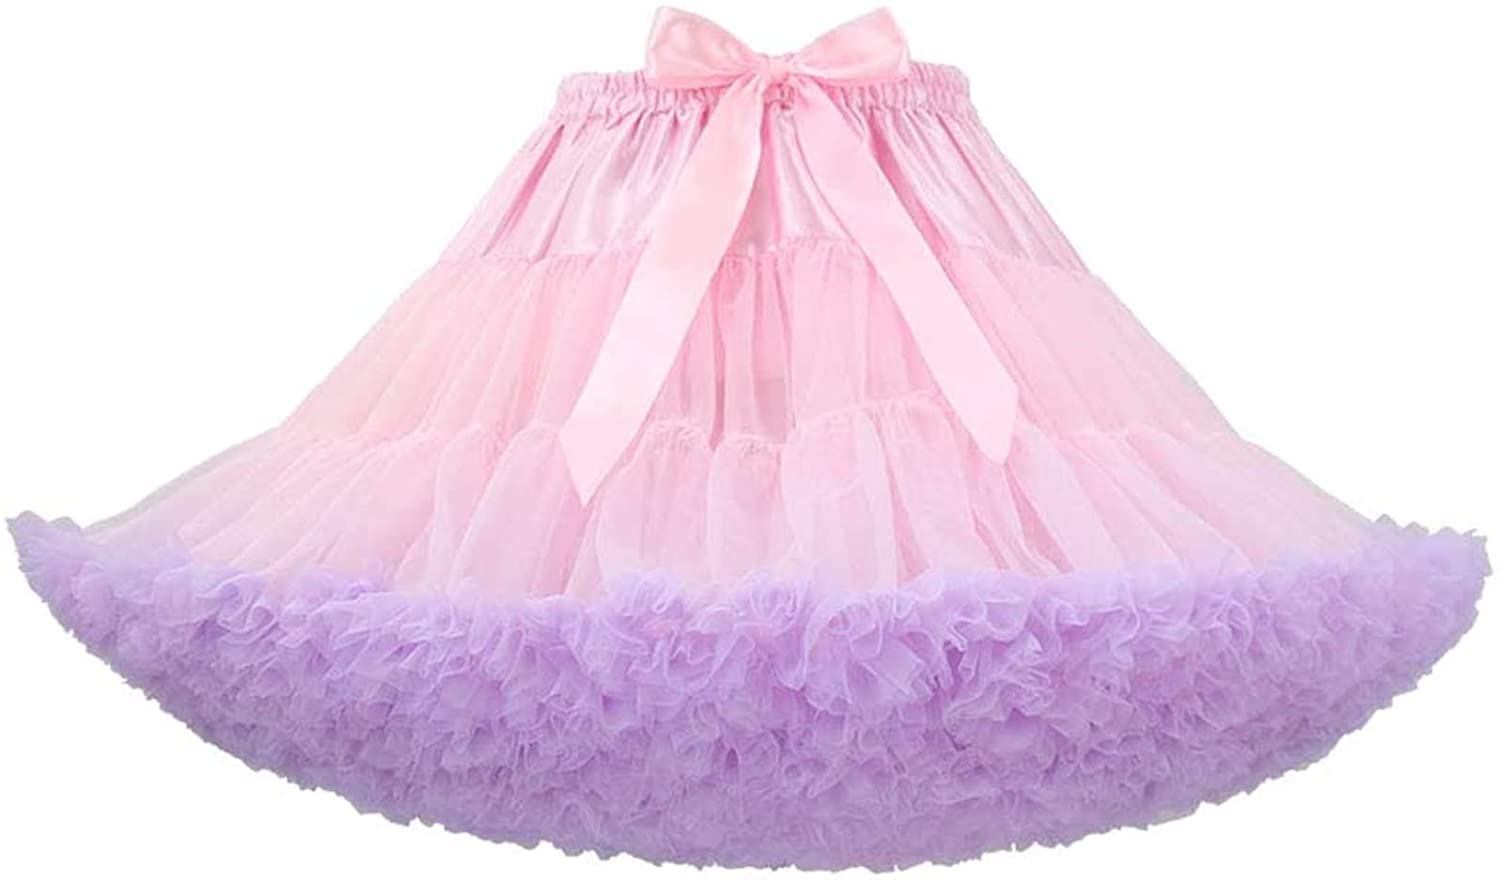 Honeystore Women's Puffy Tulle Skirt Chiffon Petticoat Tutu Princess  Pettiskirts